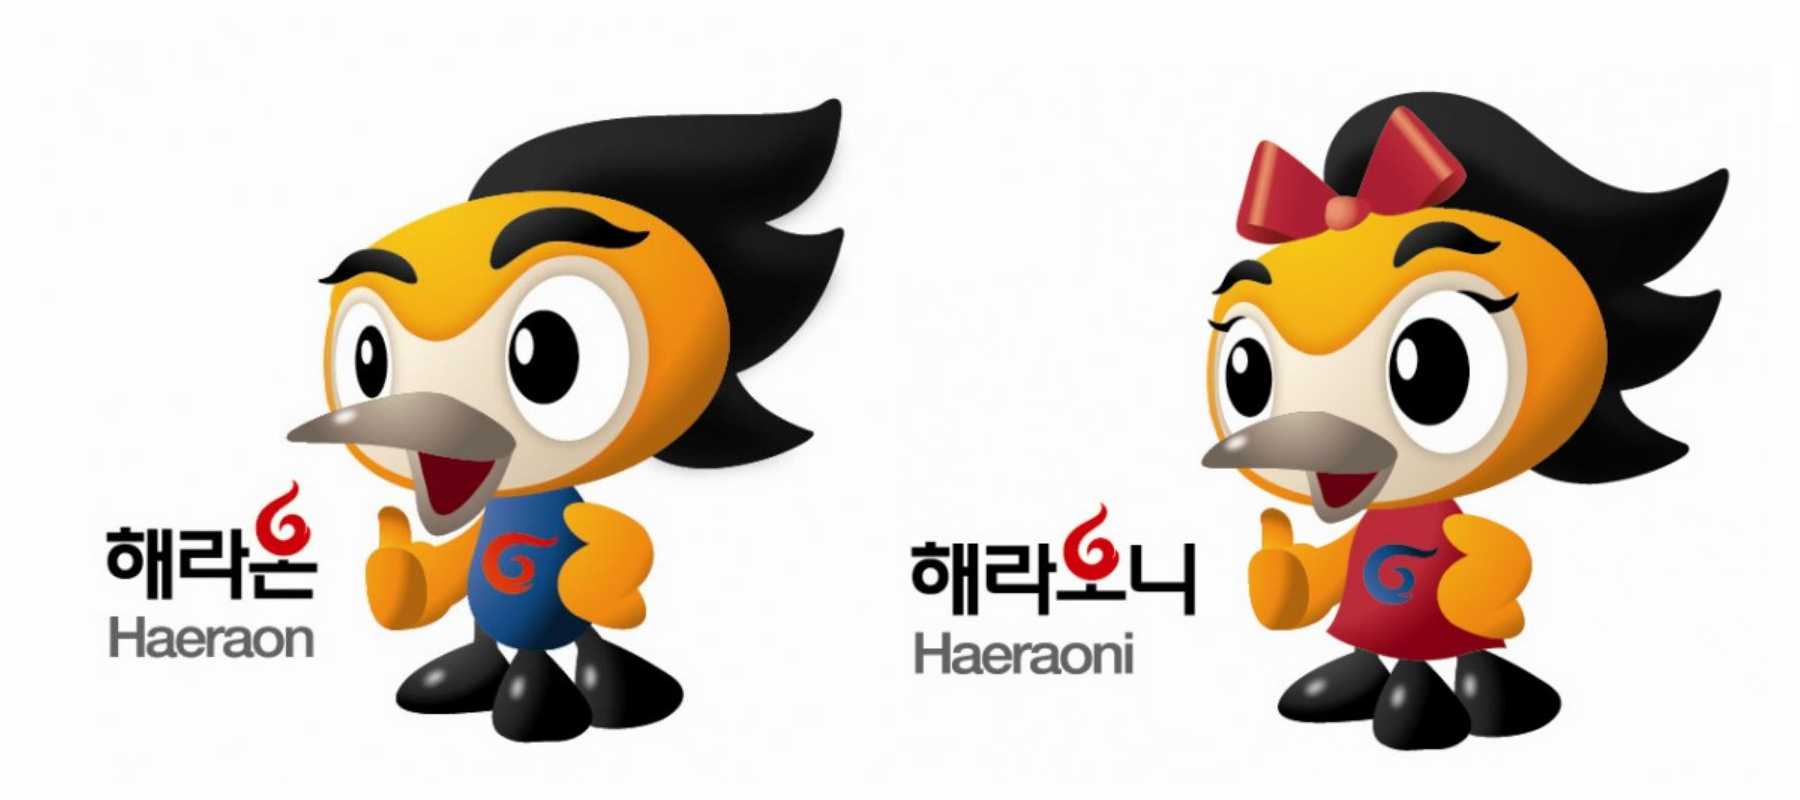 運動會吉祥物“Haeraon”和“Haeraoni”